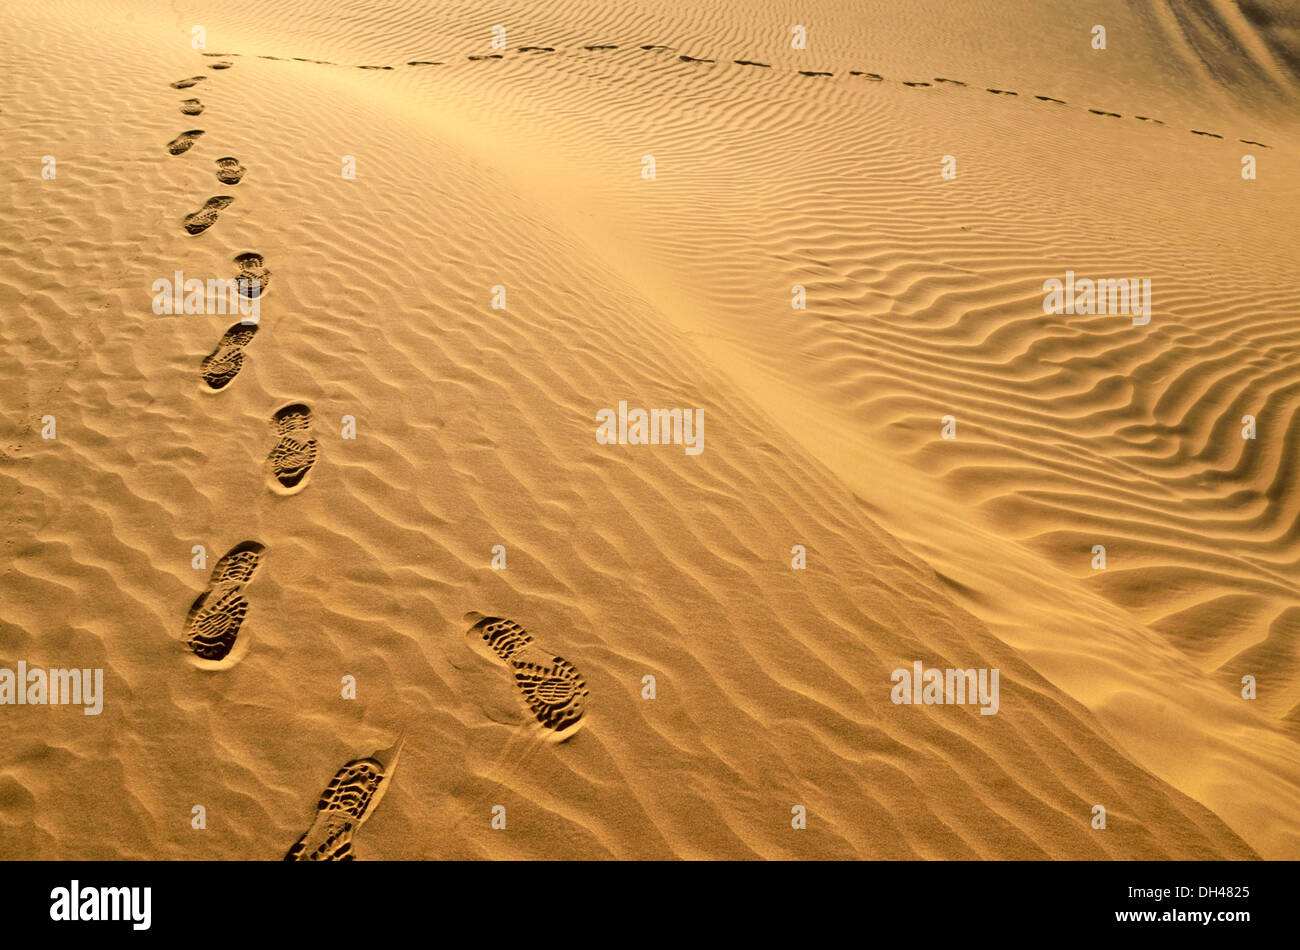 Empreintes de pieds de chaussures sur le sable du désert du Rajasthan Inde Asie Banque D'Images